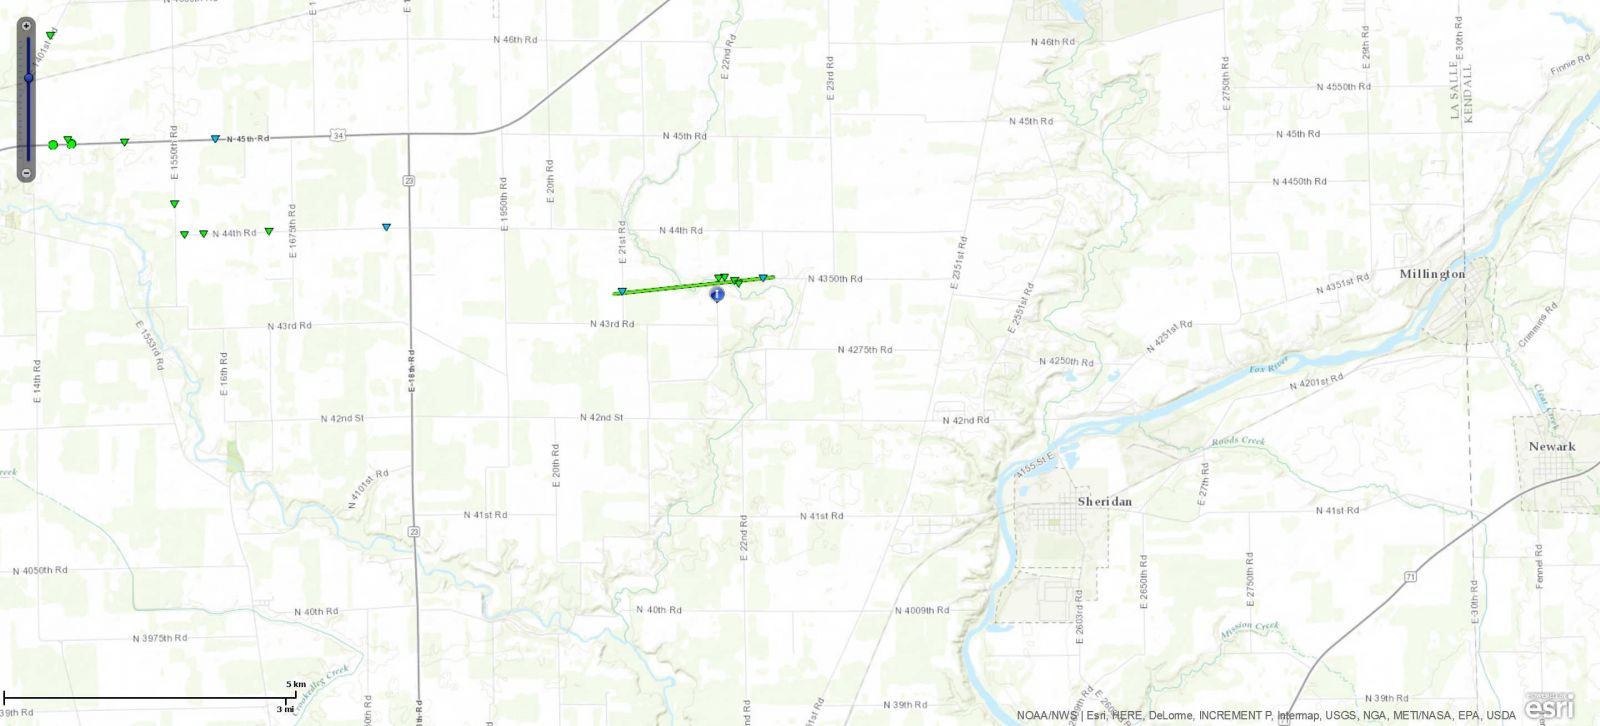 Track Map of Sheridan, IL tornado